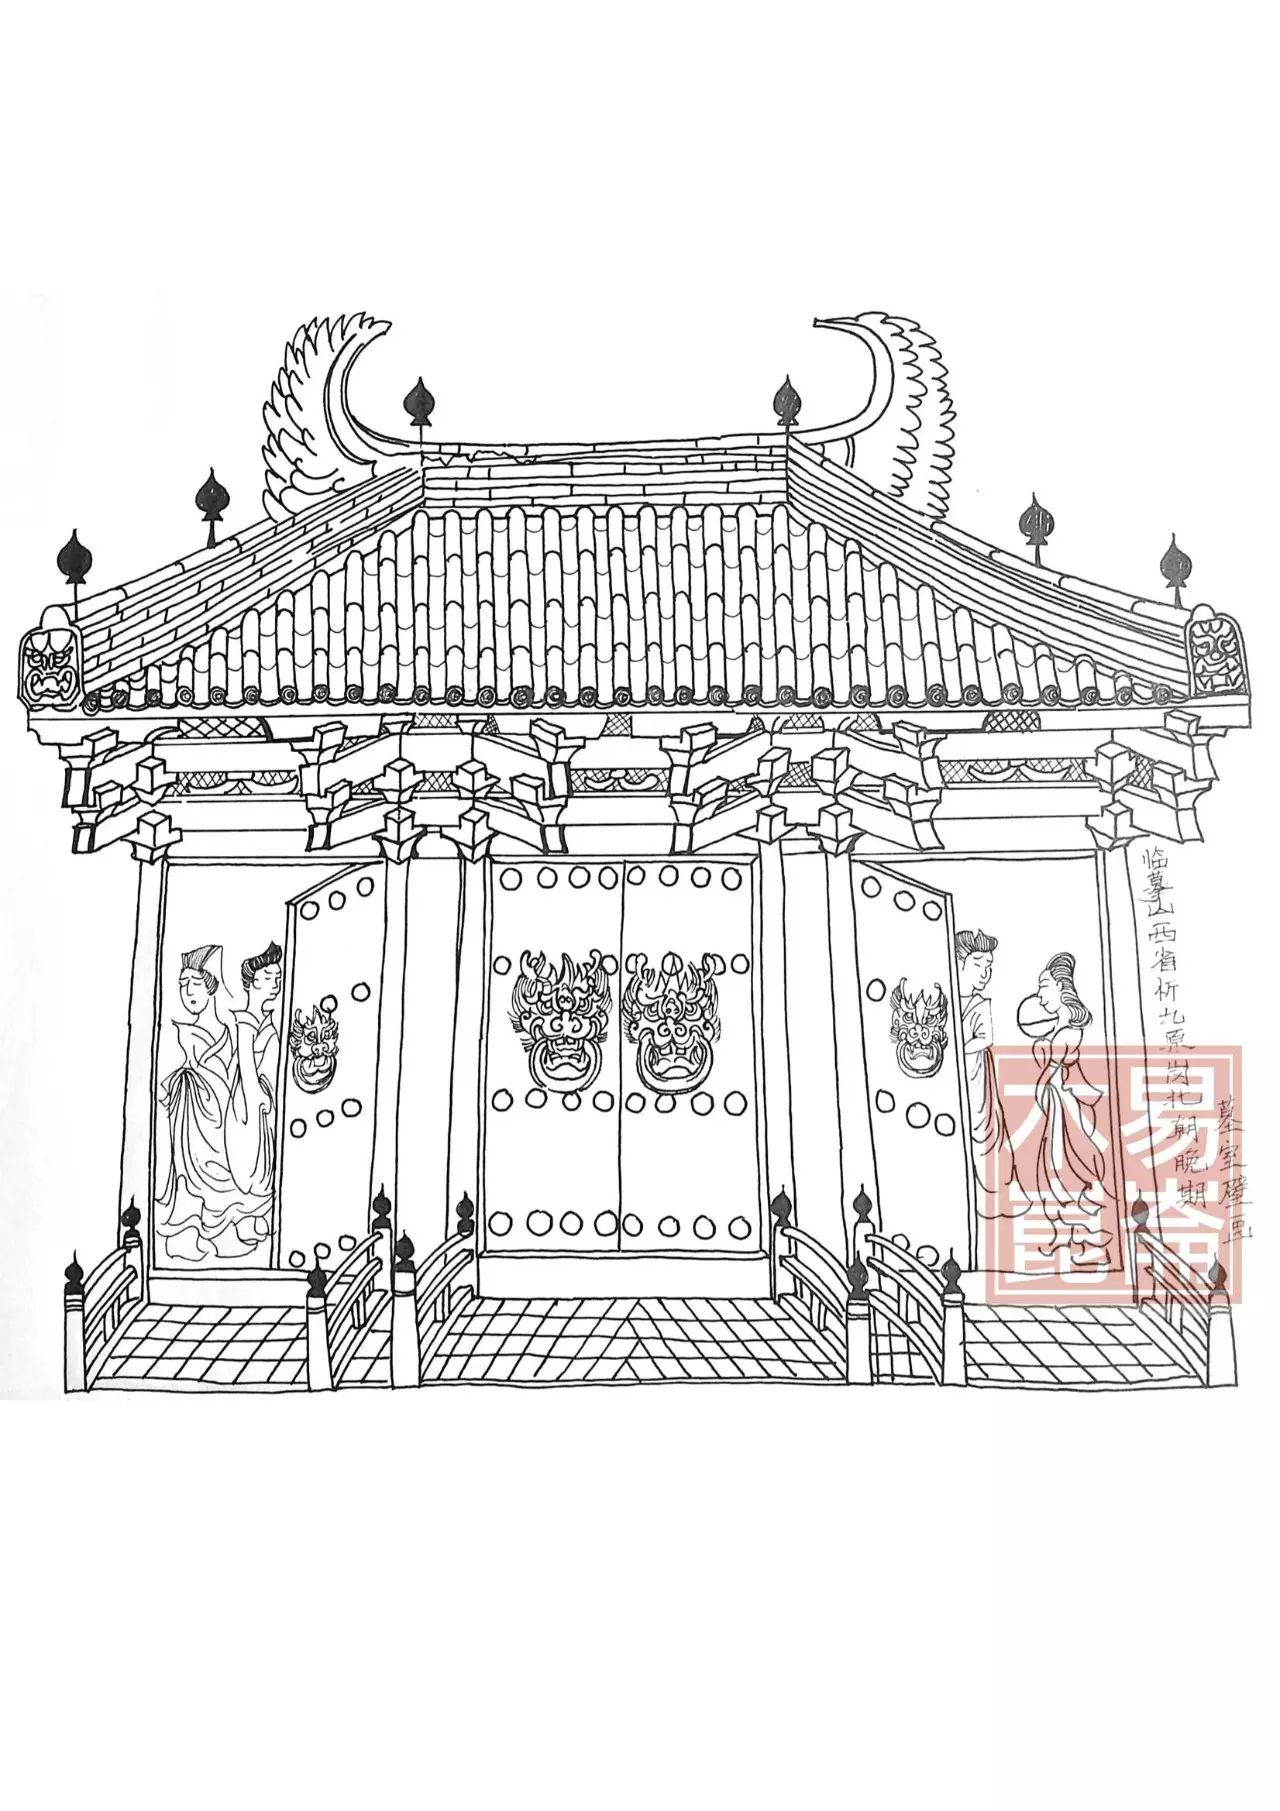 屋顶凤凰祥瑞屋顶,鸱尾,和斗拱的描绘墓室壁画绘制了一座木构建筑